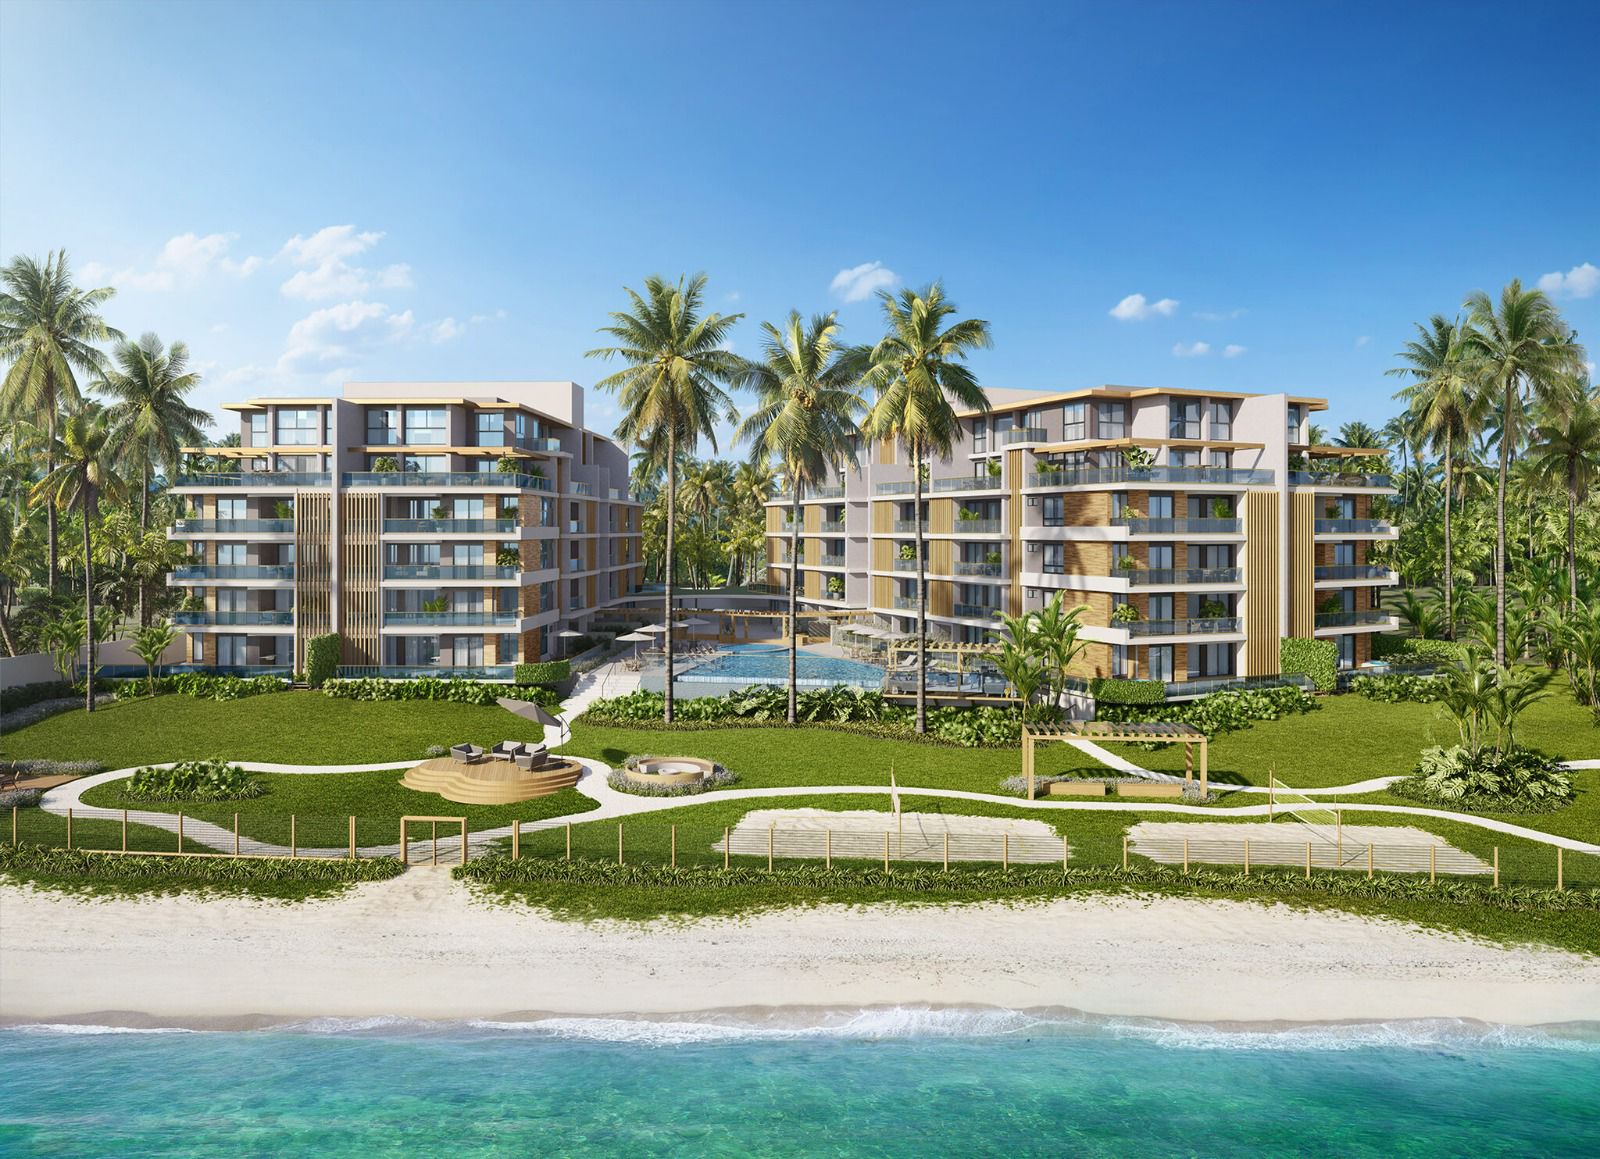 Residencial de alto padrão será construído na Praia dos Milionários, em Ilhéus